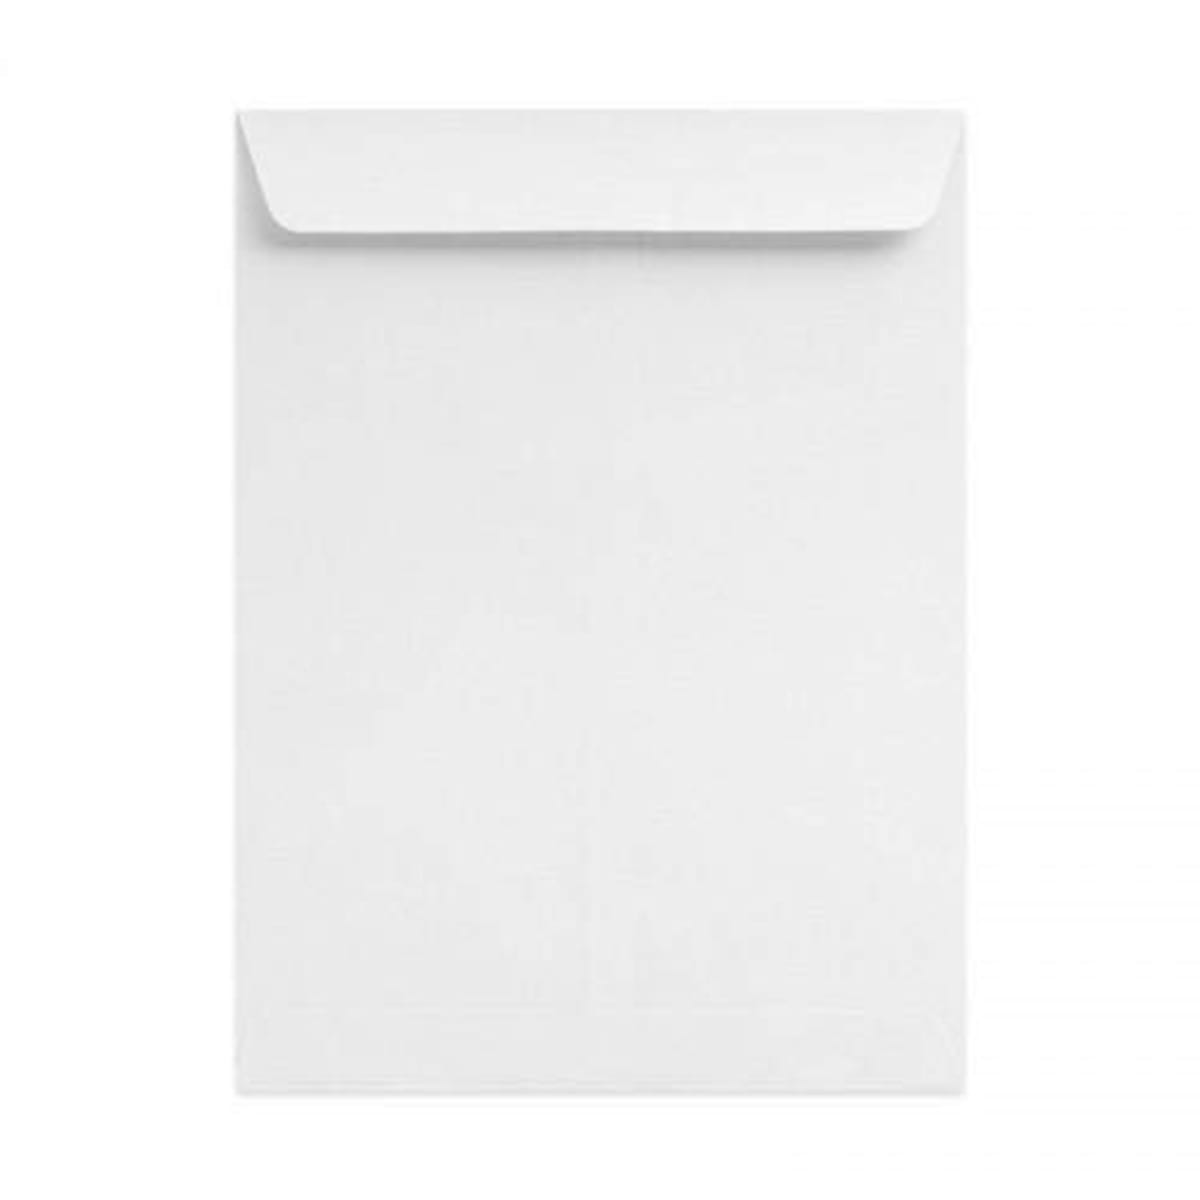 Конверт для бумаг 5 букв. Конверт белый a4 Libra. Конверт крафт с5 с вертикальным клапаном. Конверты белые бумажные. Белый бумажный конверт вертикальный.